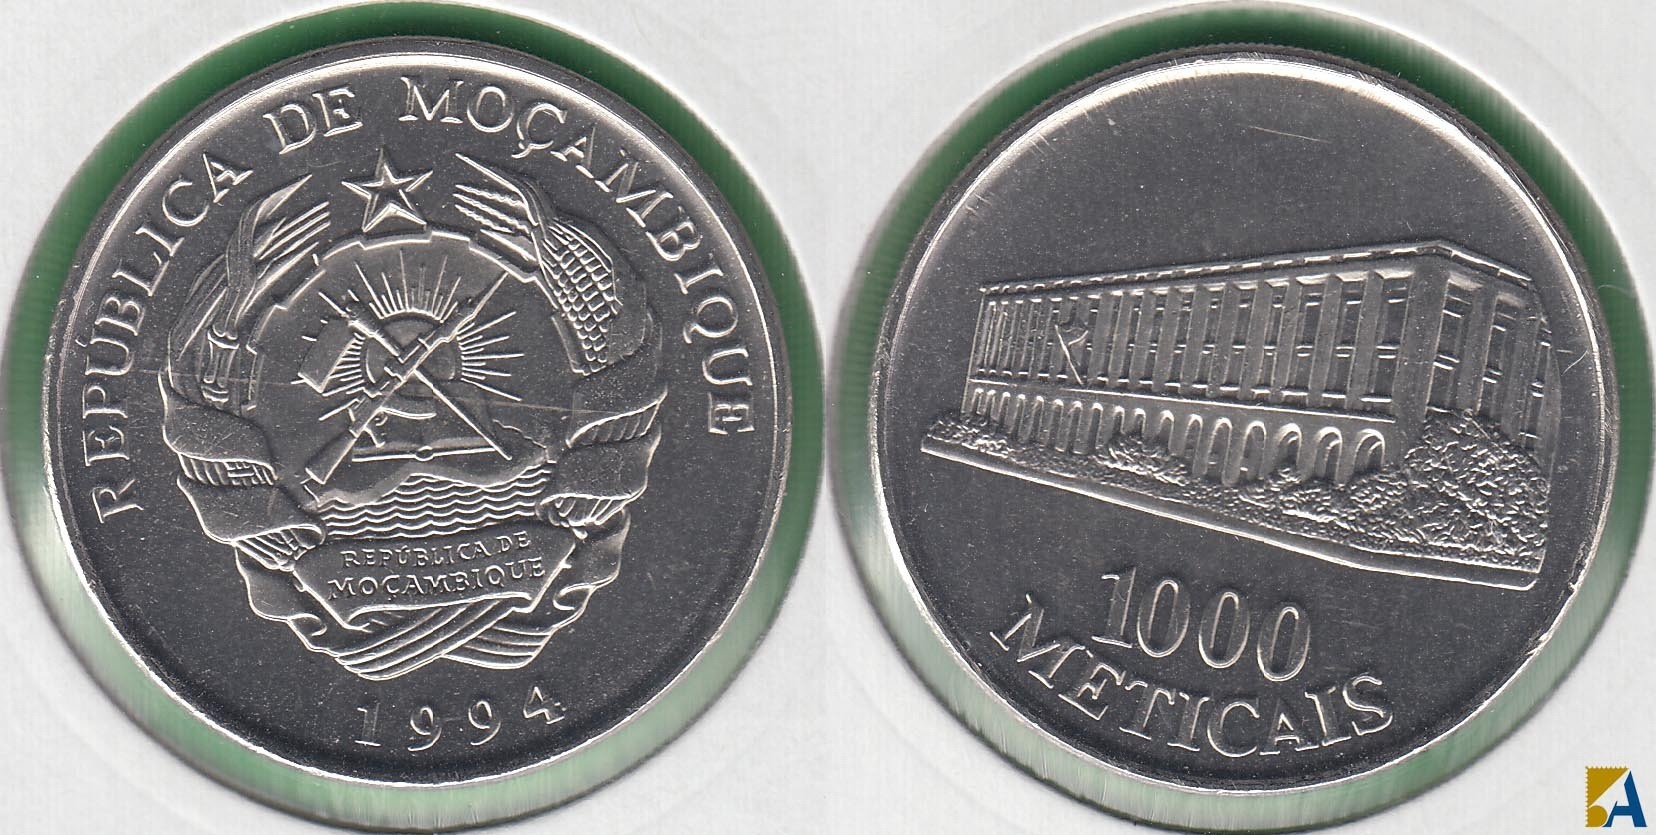 MOZAMBIQUE. 1000 METECAIS DE 1994